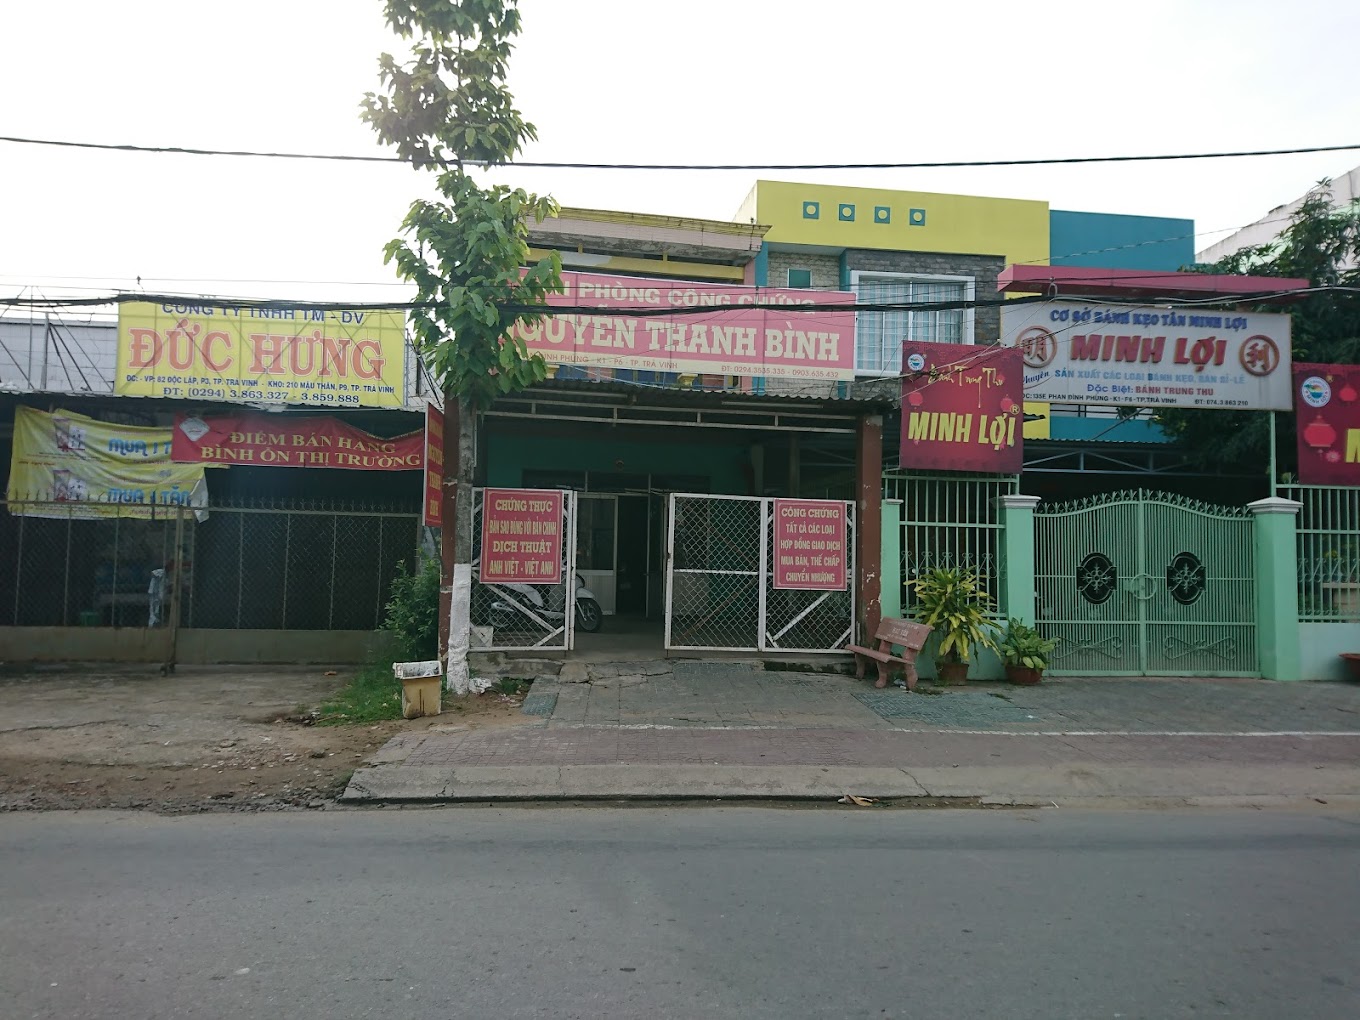 Liên hệ Văn phòng công chứng Nguyễn Thanh Bình thông tin địa chỉ số điện thoại